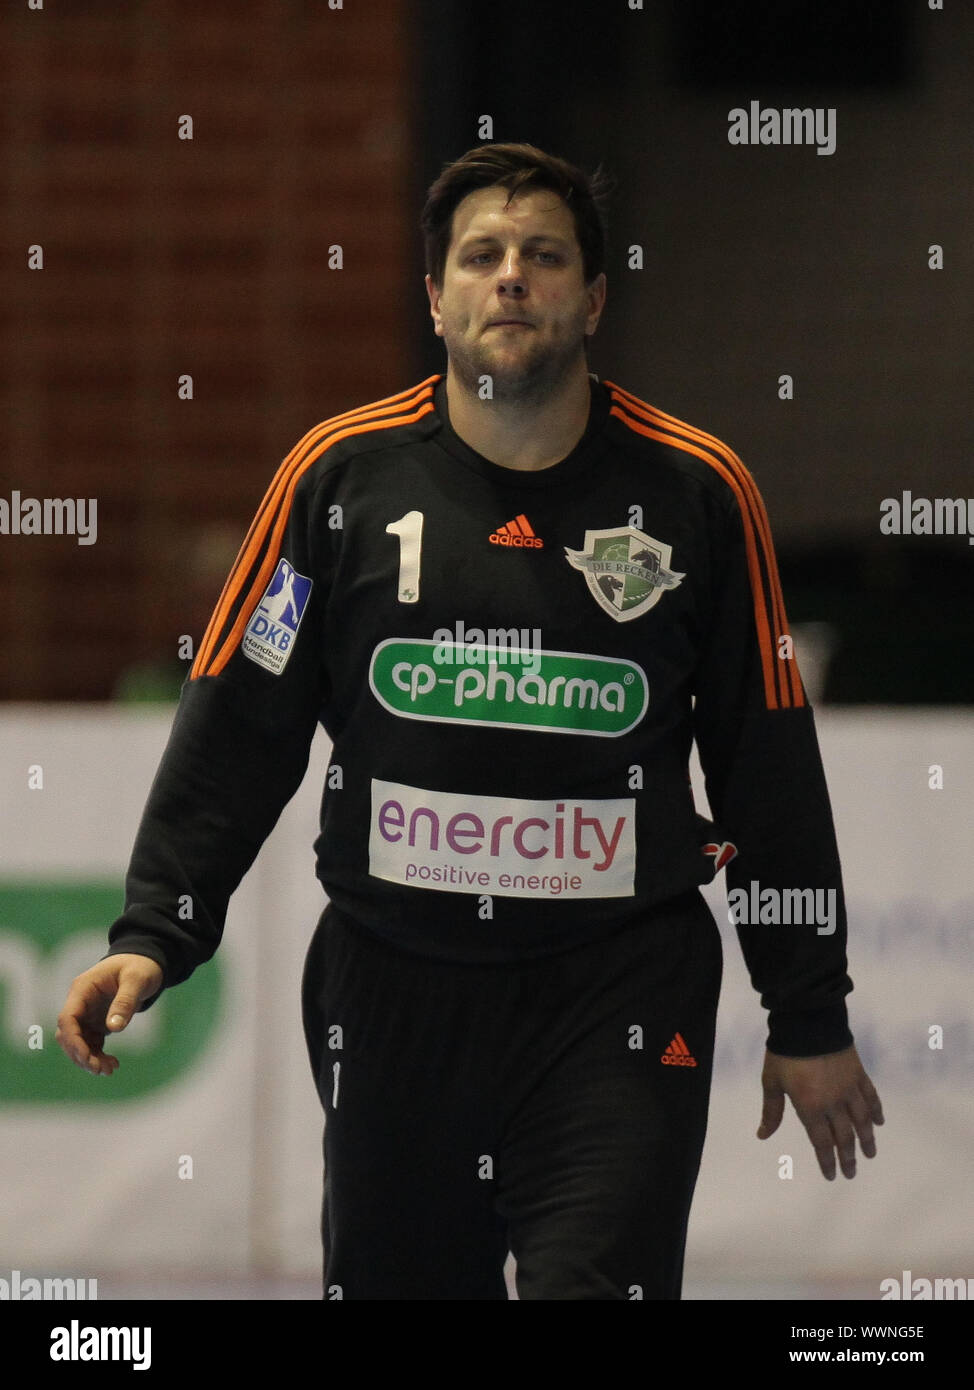 deutscher Handballtorwart Martin Ziemer -Saison 2014/15 TSV Hannover Burgdorf,DHB-Team Stock Photo